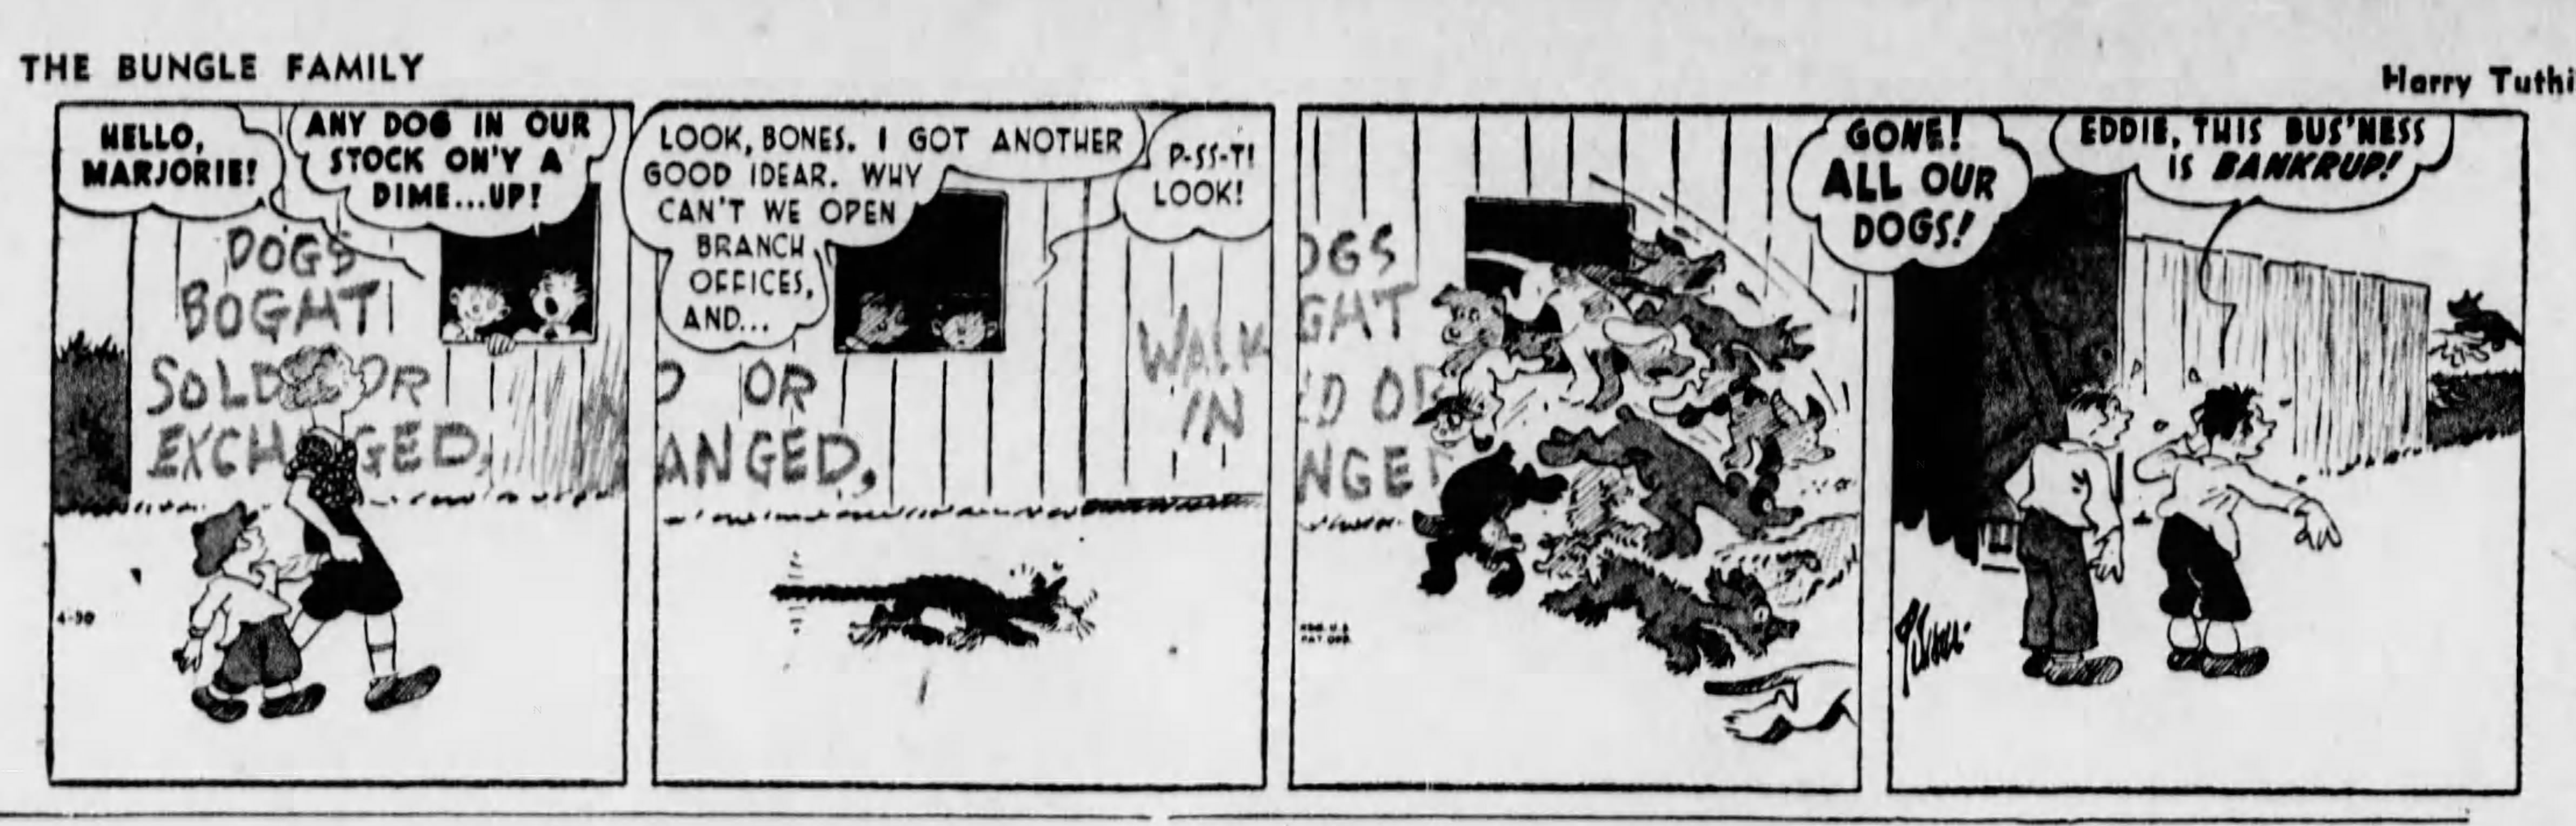 The_Brooklyn_Daily_Eagle_Fri__Apr_30__1943_(9).jpg